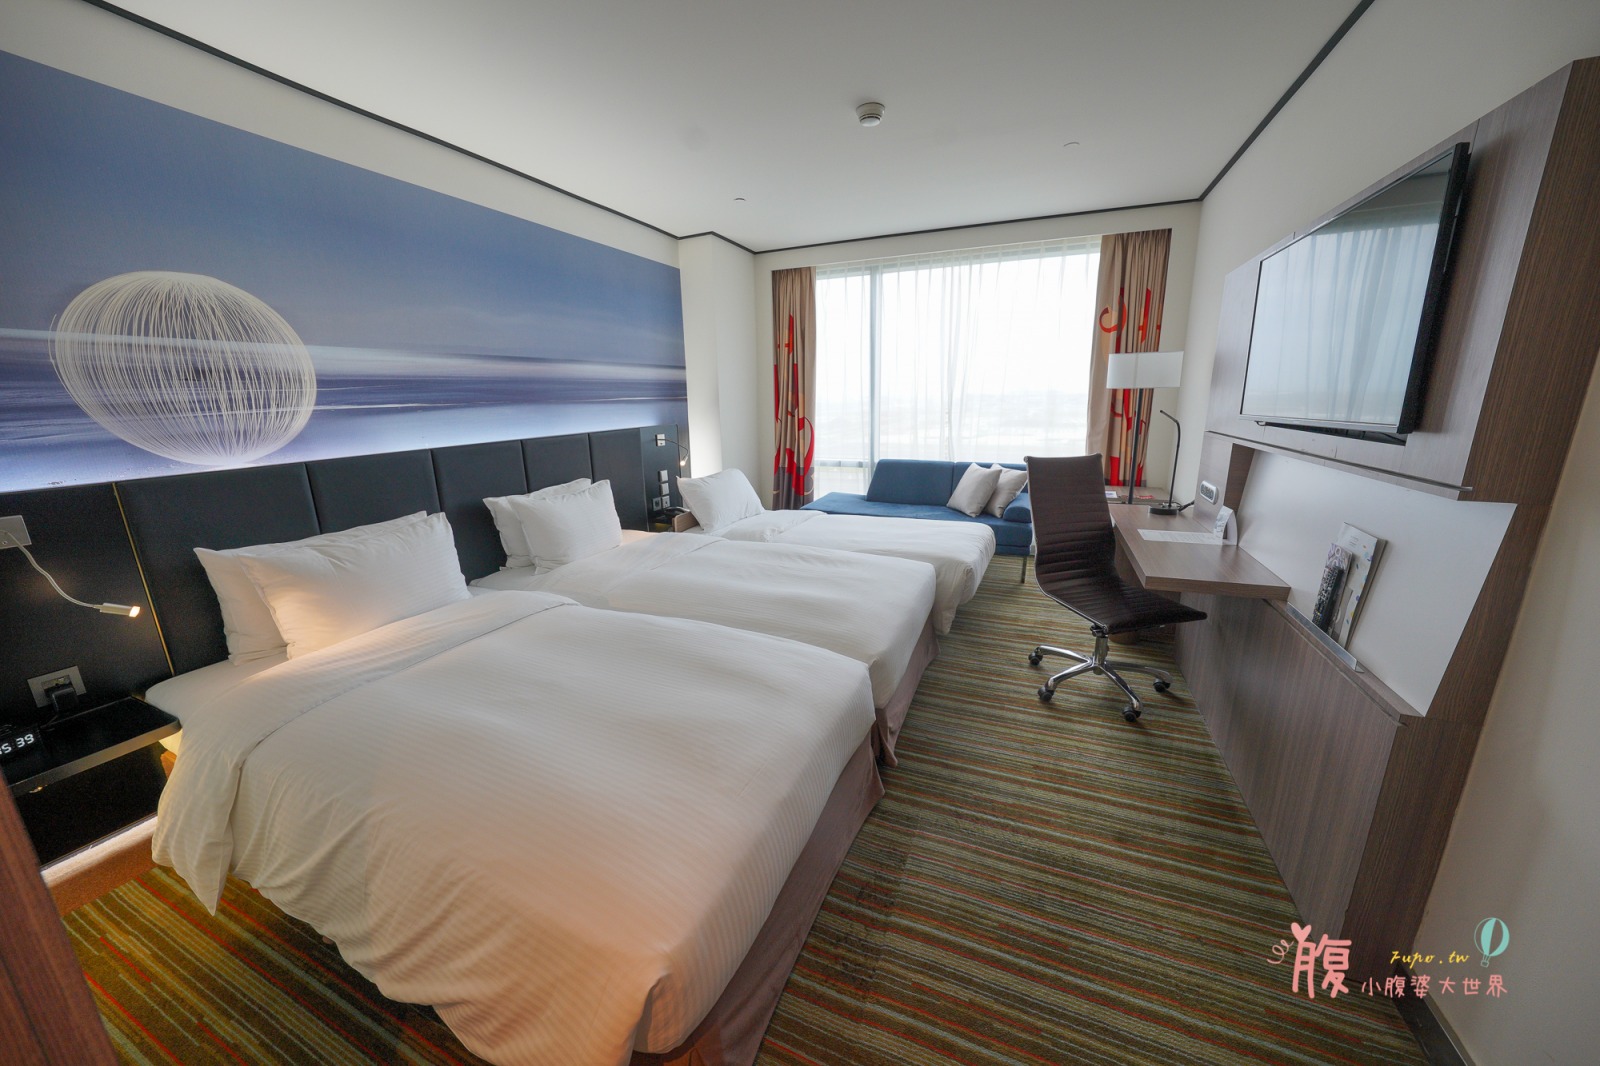 桃園住宿》華航諾富特飯店 Novotel Taipei，房間內就可以看飛機，16歲以下孩童免費加床及早餐